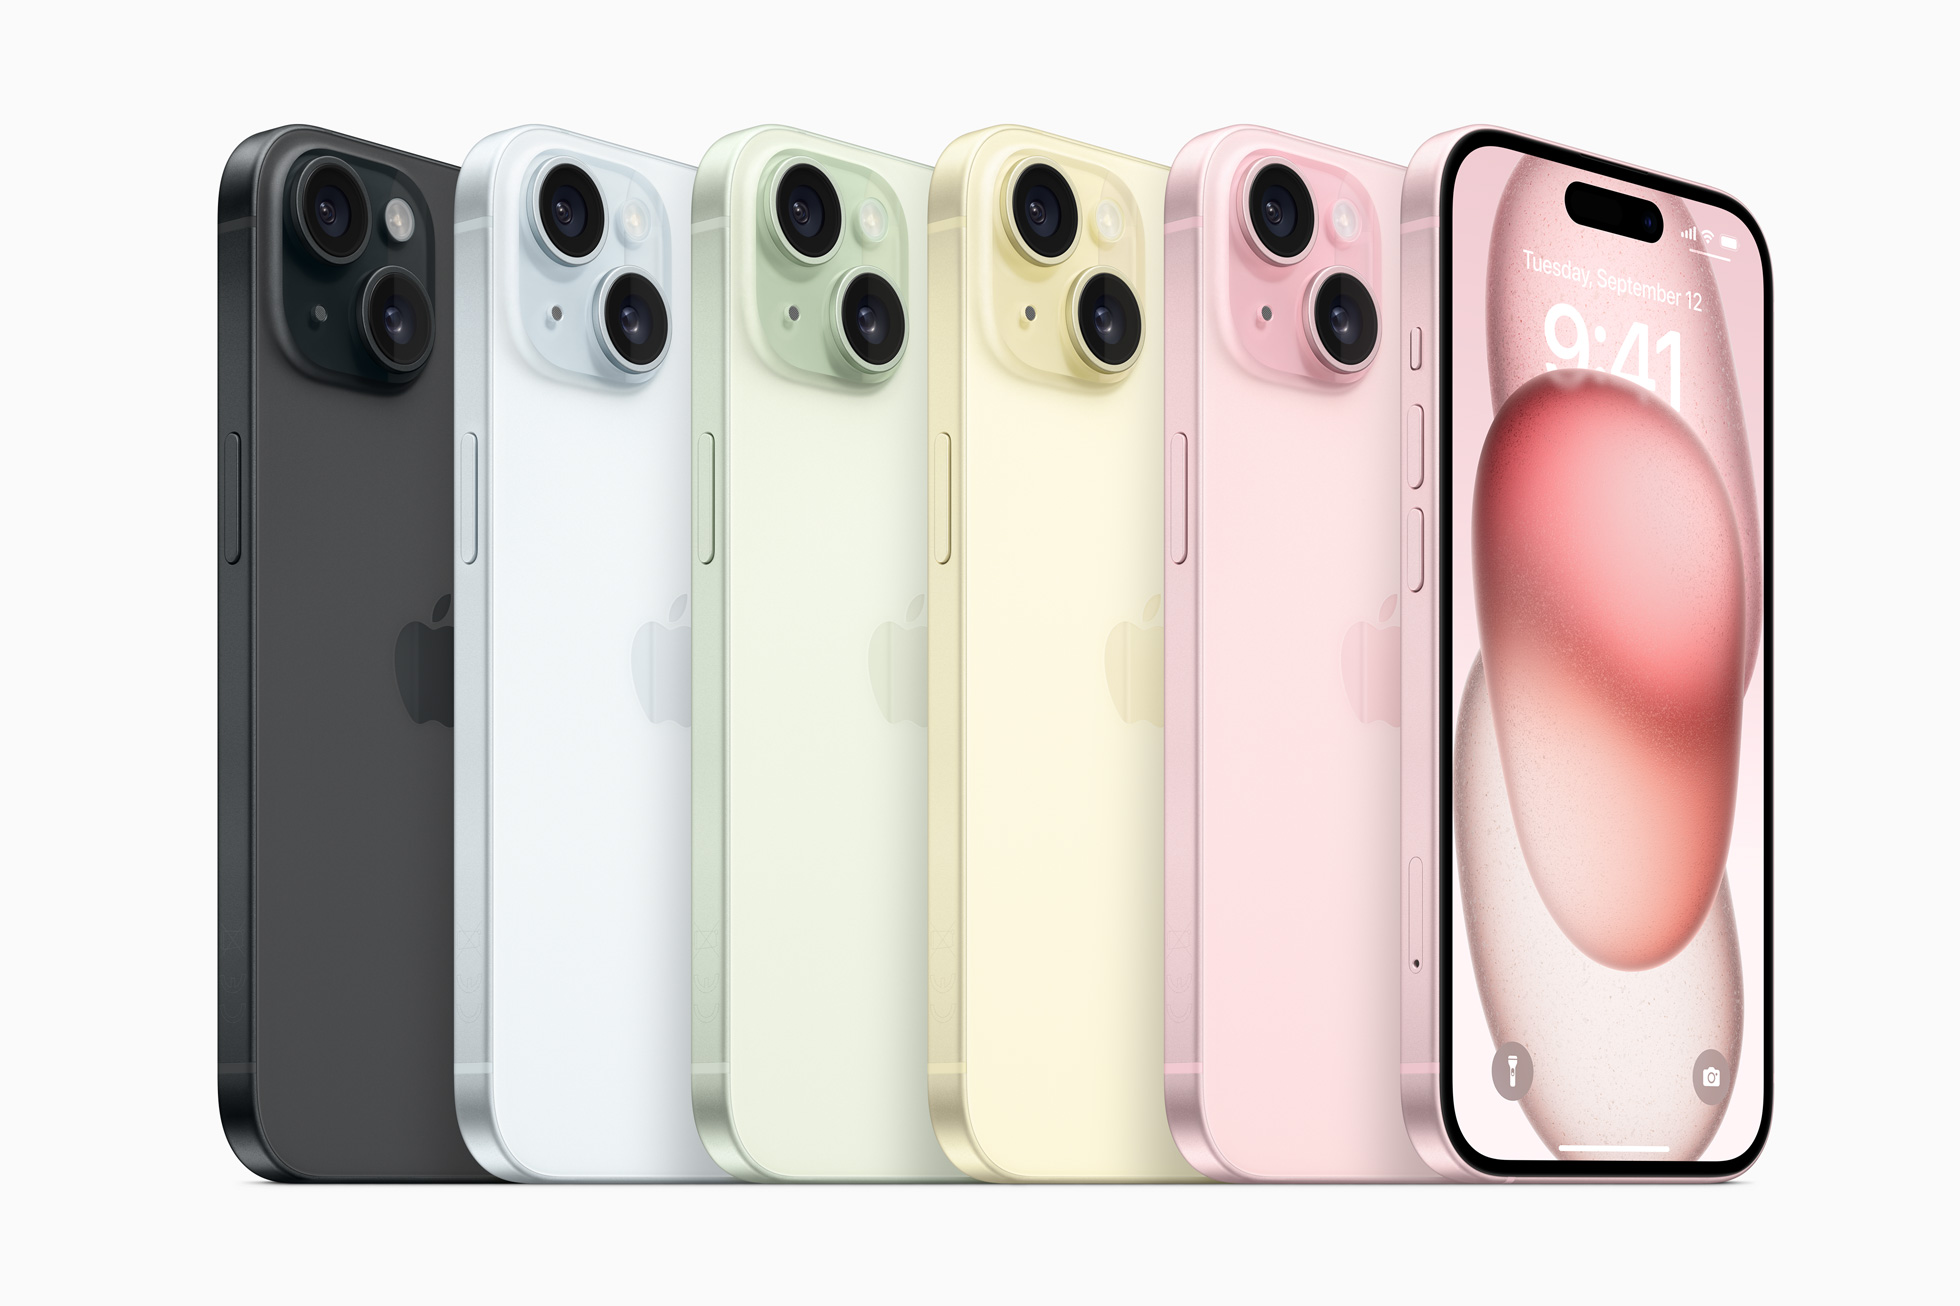 O iPhone 15 e o iPhone 15 Plus estarão disponíveis em cinco cores lindas: preto, azul, verde, amarelo e rosa.